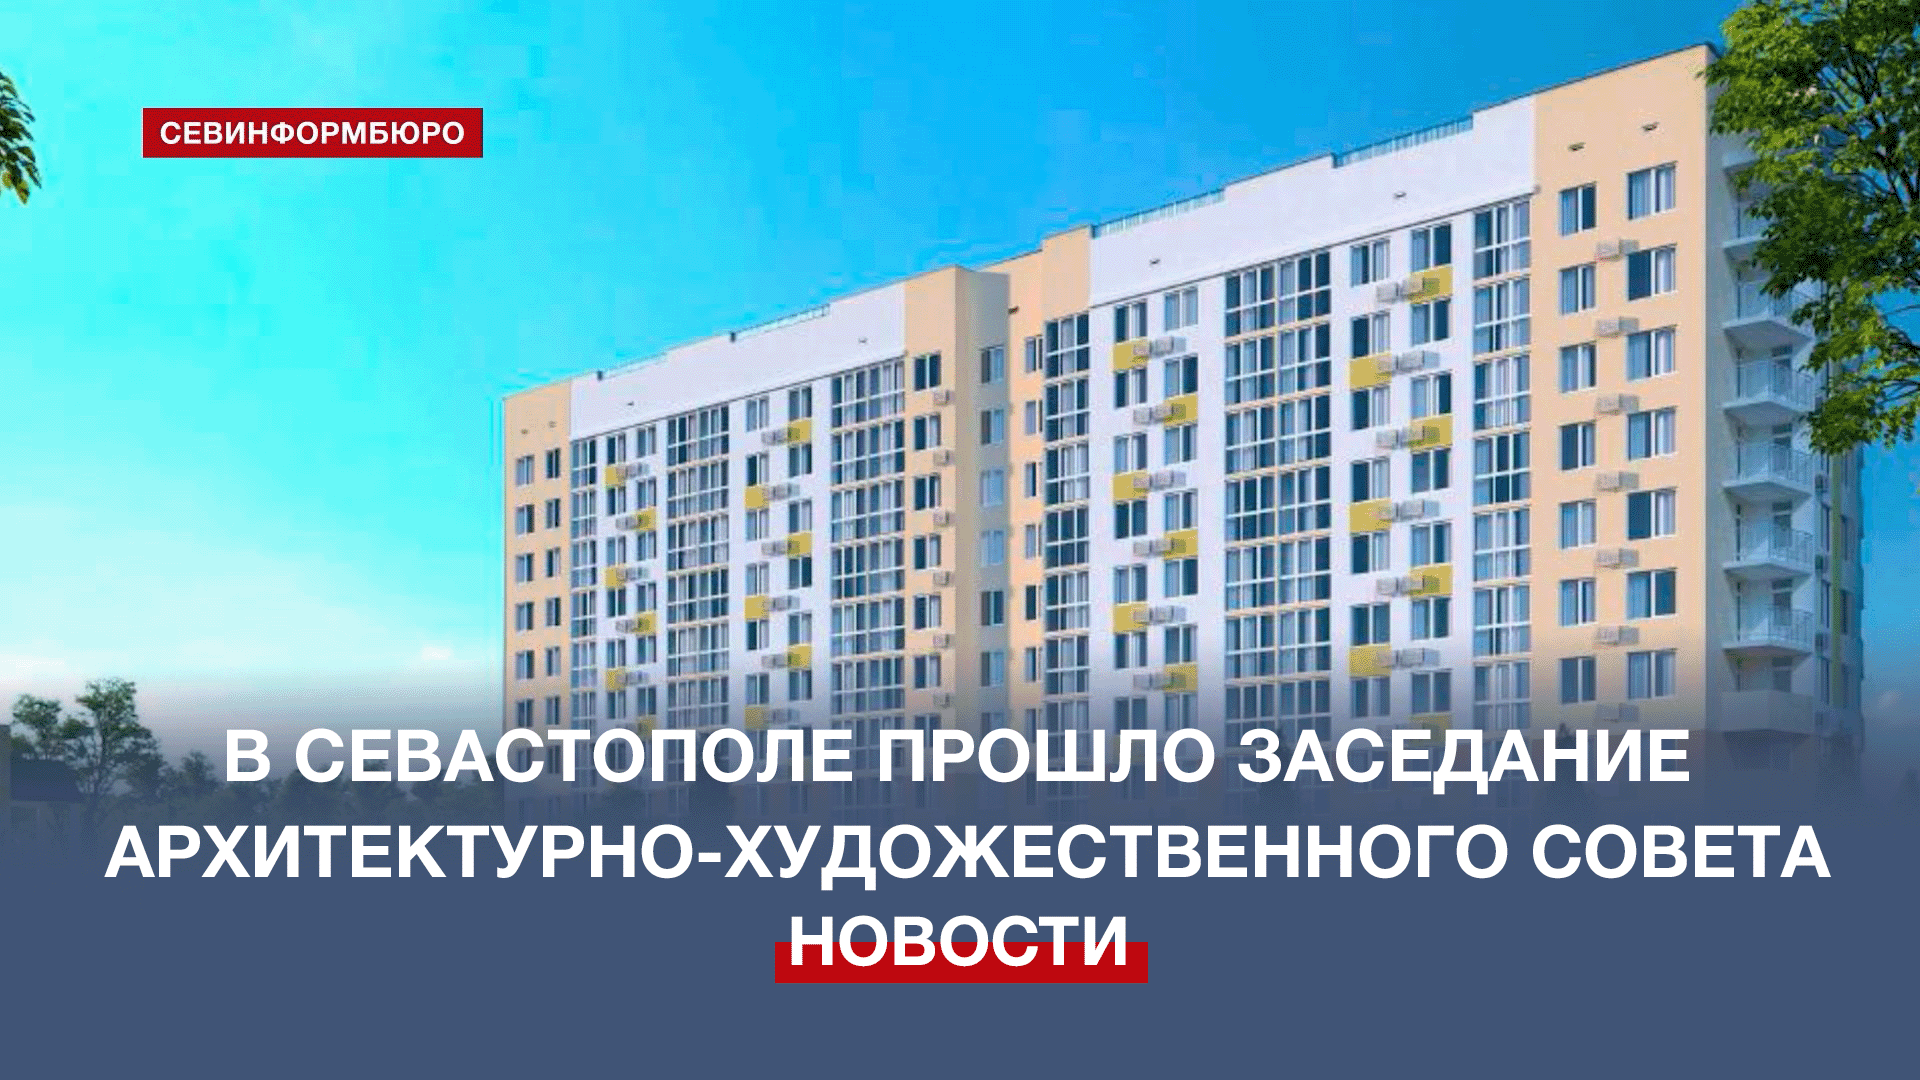 Облик каких новых зданий утвердил Архитектурно-художественный совет Севастополя?